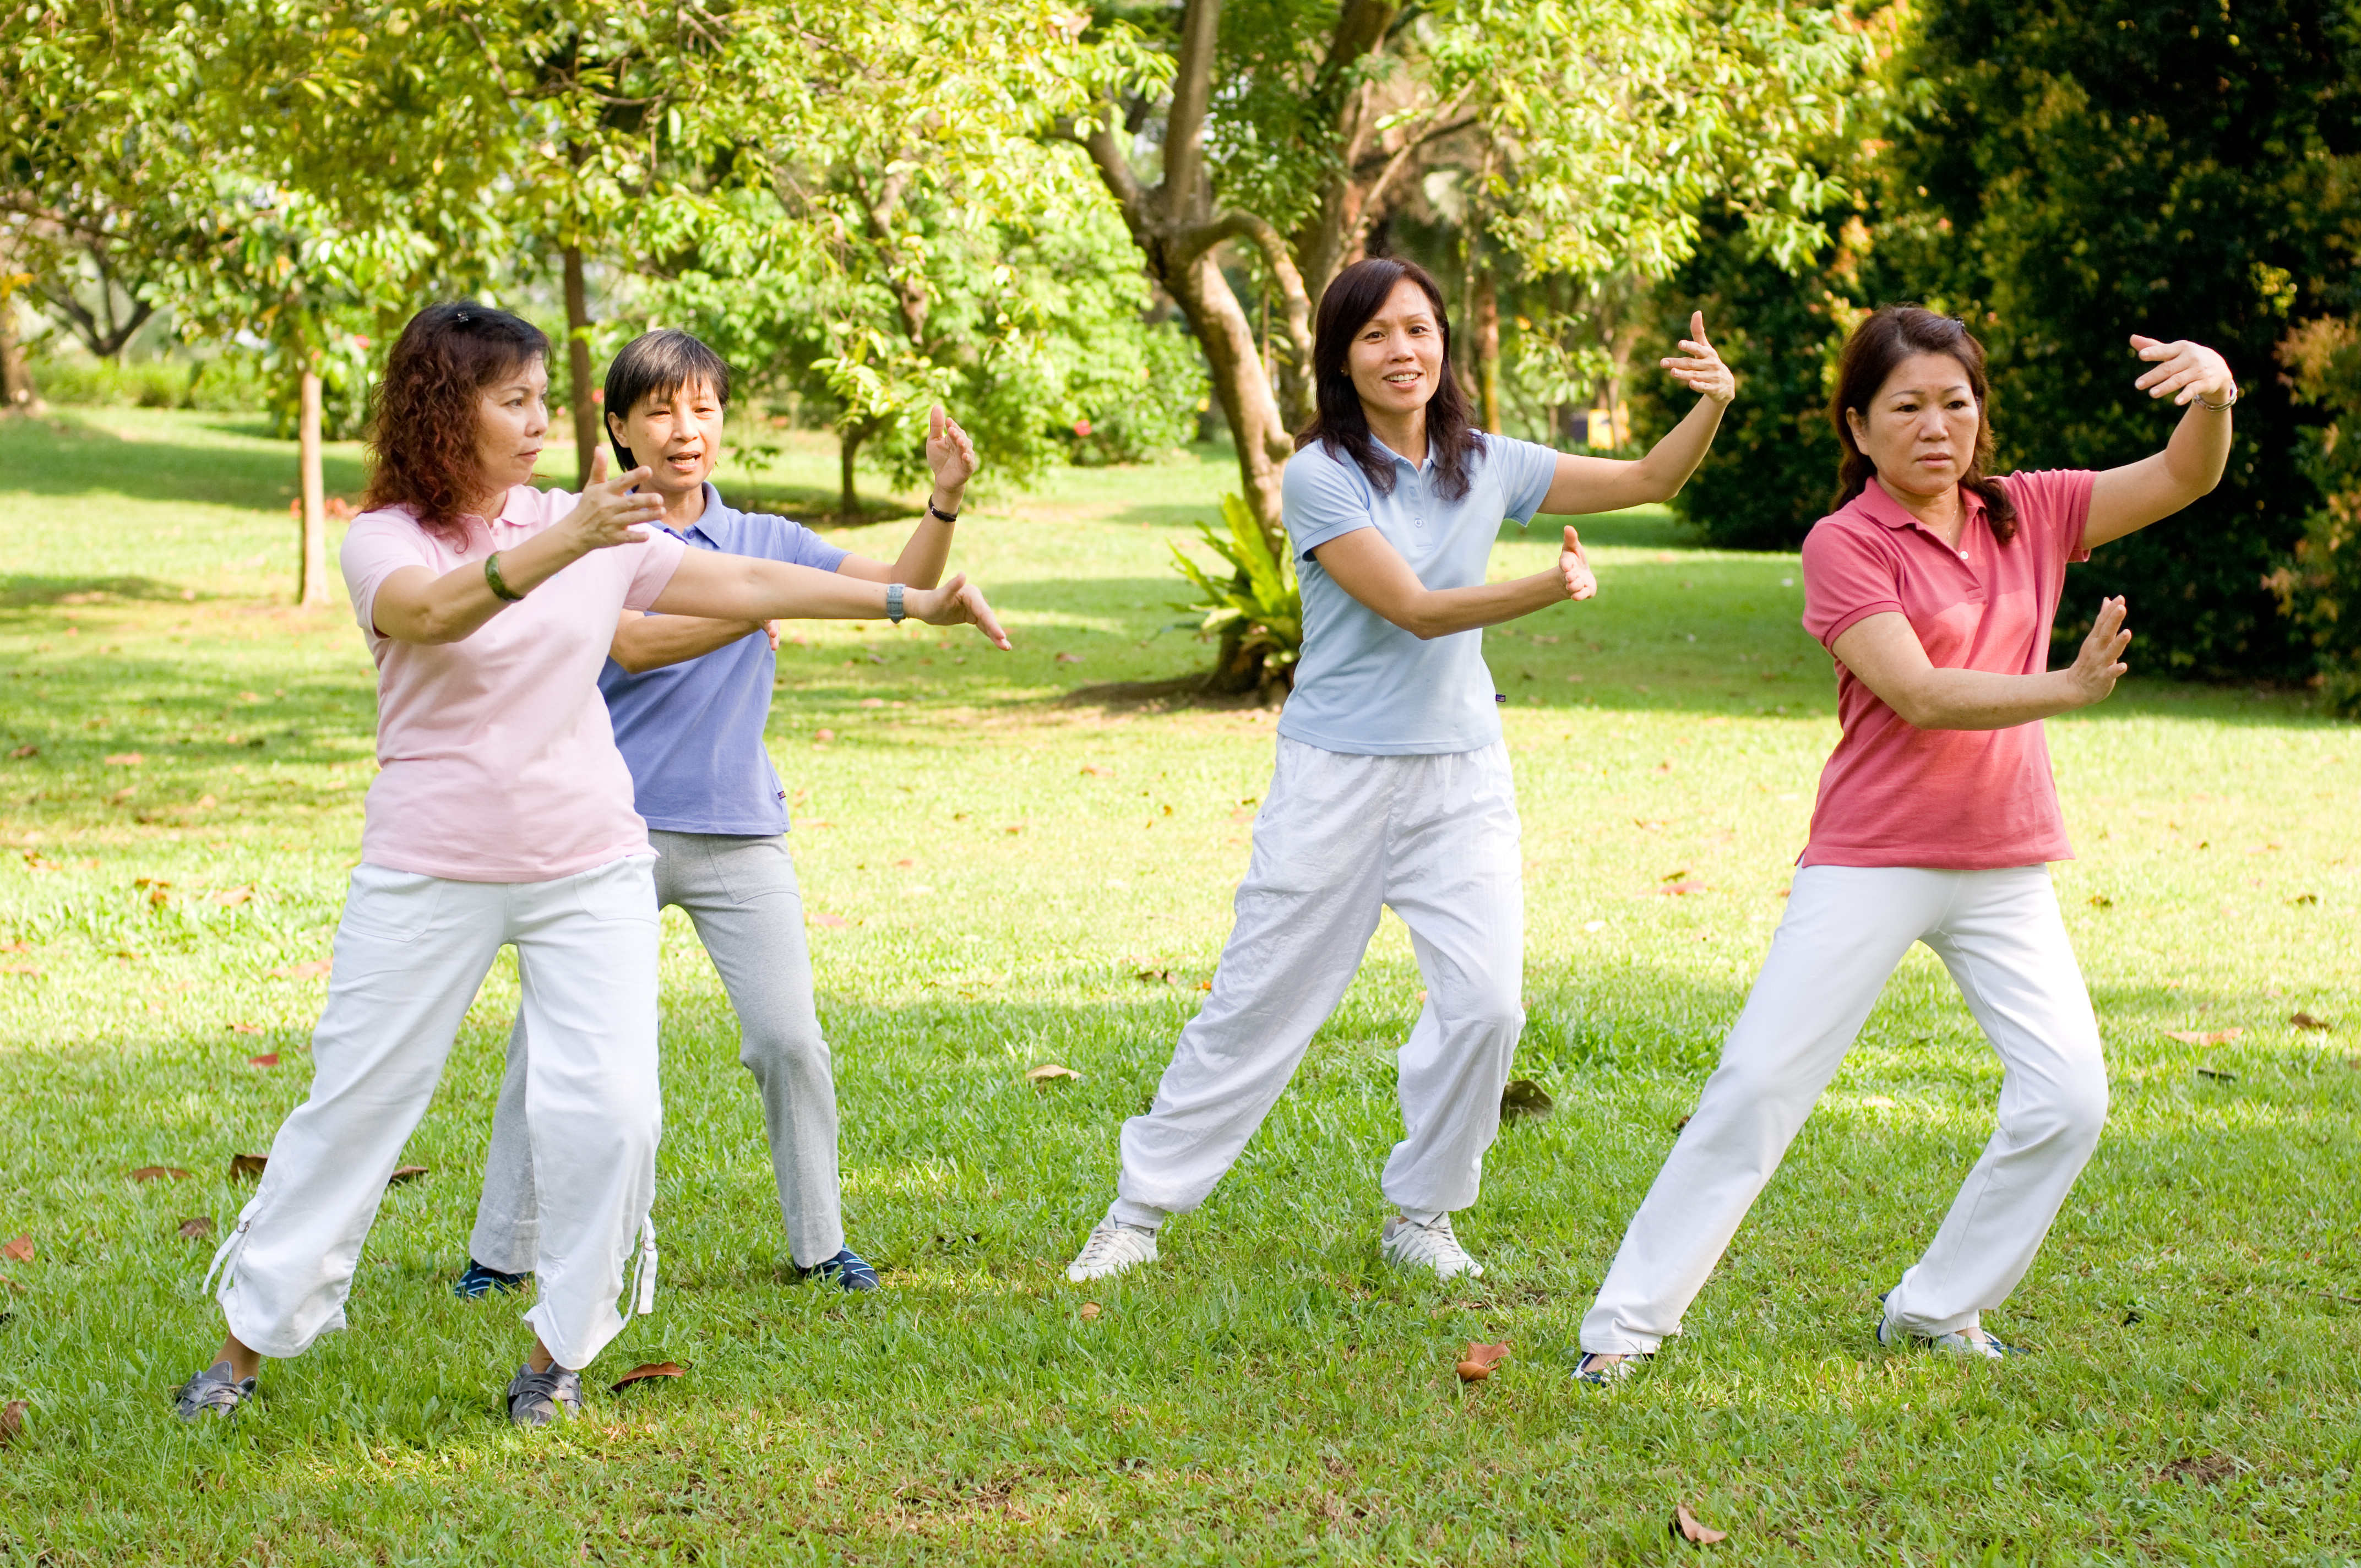 Fibromyalgia Exercise Program Shows Effectiveness in Balance Training